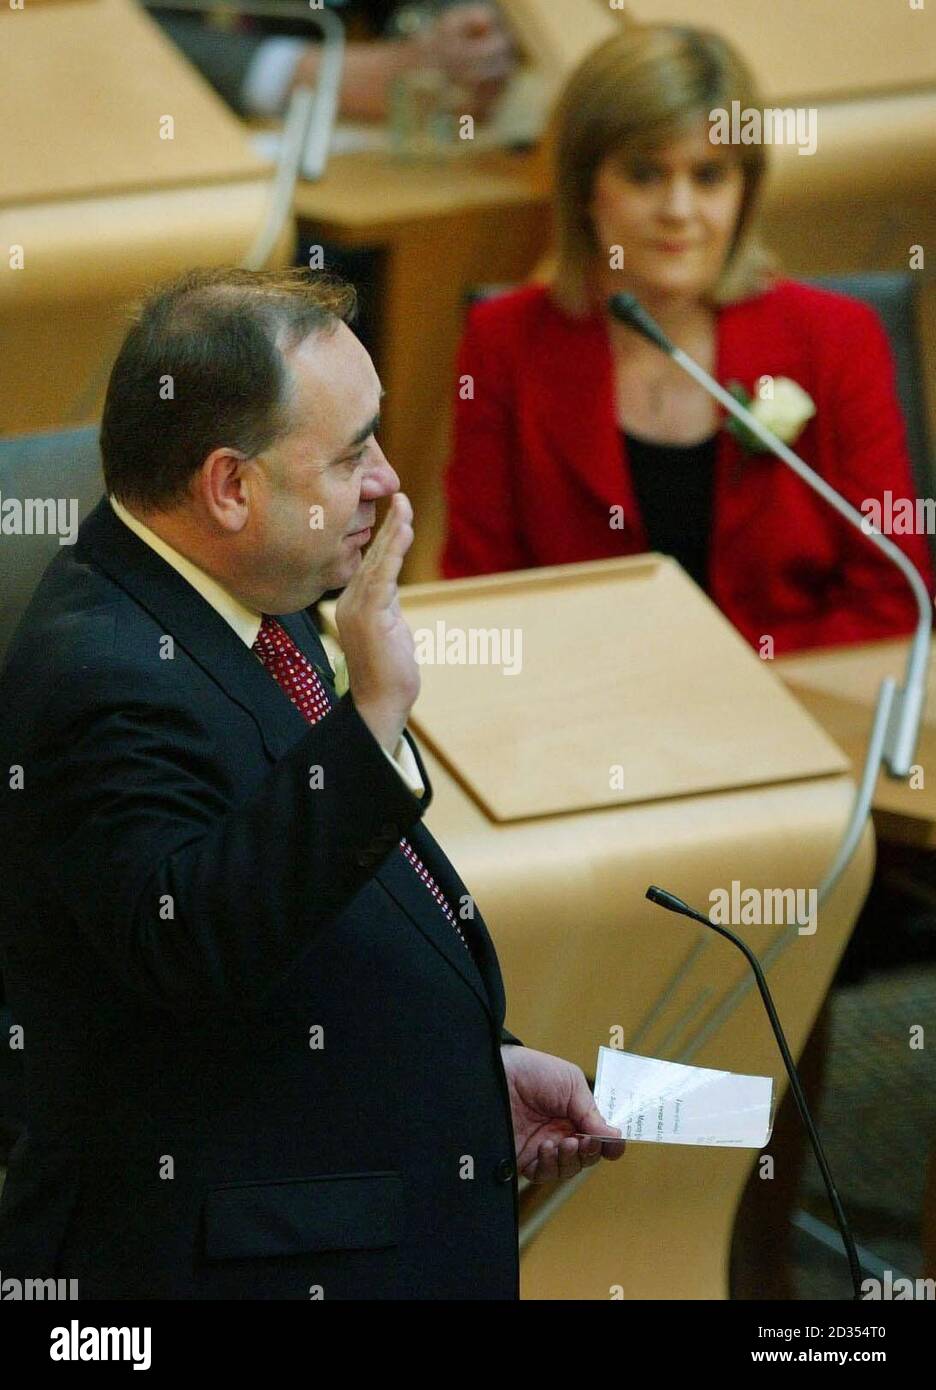 Der Vorsitzende der Scottish National Party, Alex Salmond, legt den Eid vor dem schottischen Parlament in Edinburgh ab. Stockfoto